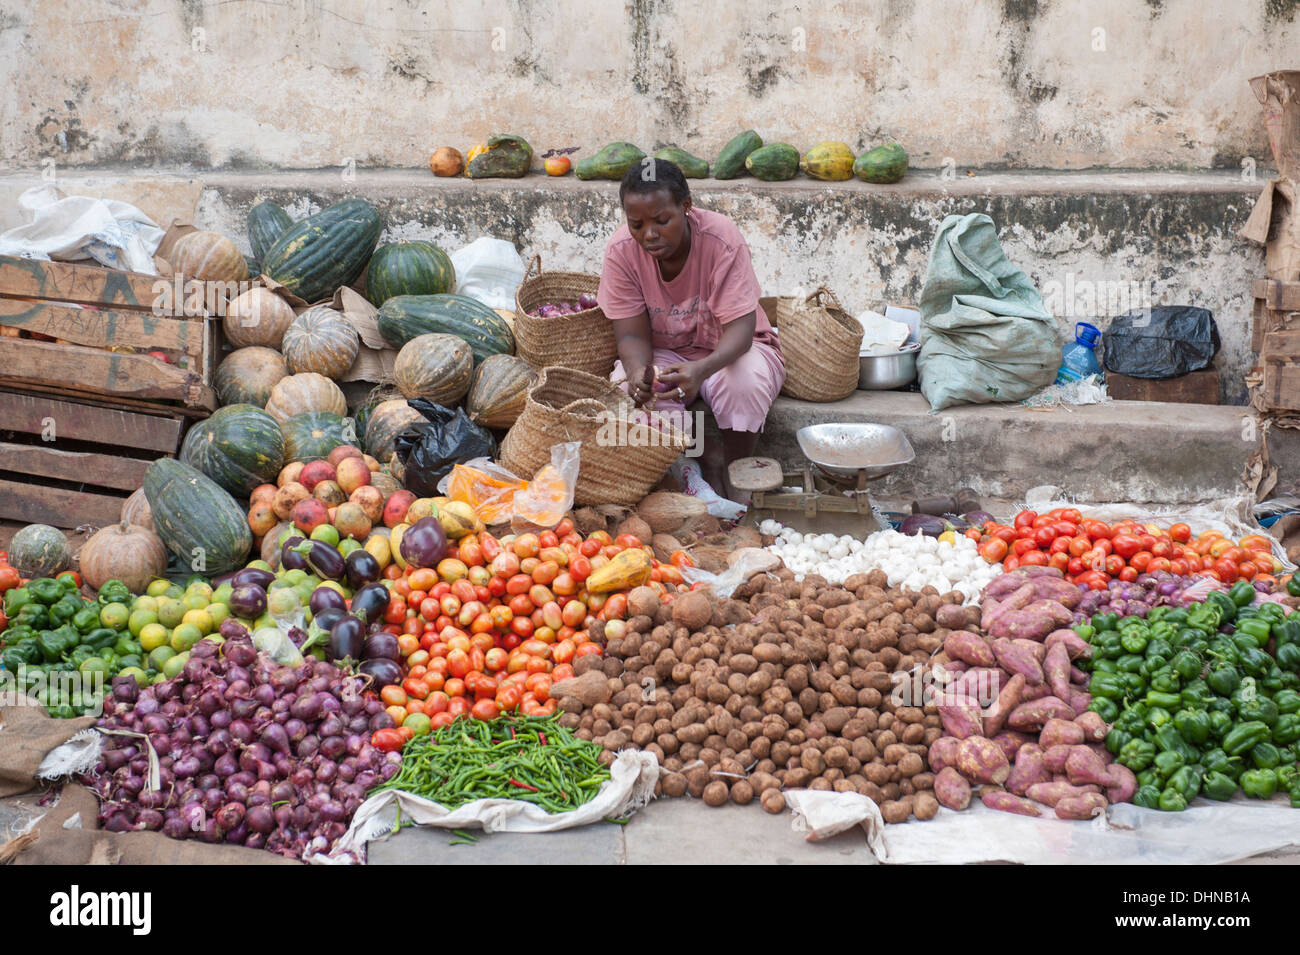 Le marché de la ville de Lamu, Kenya Banque D'Images